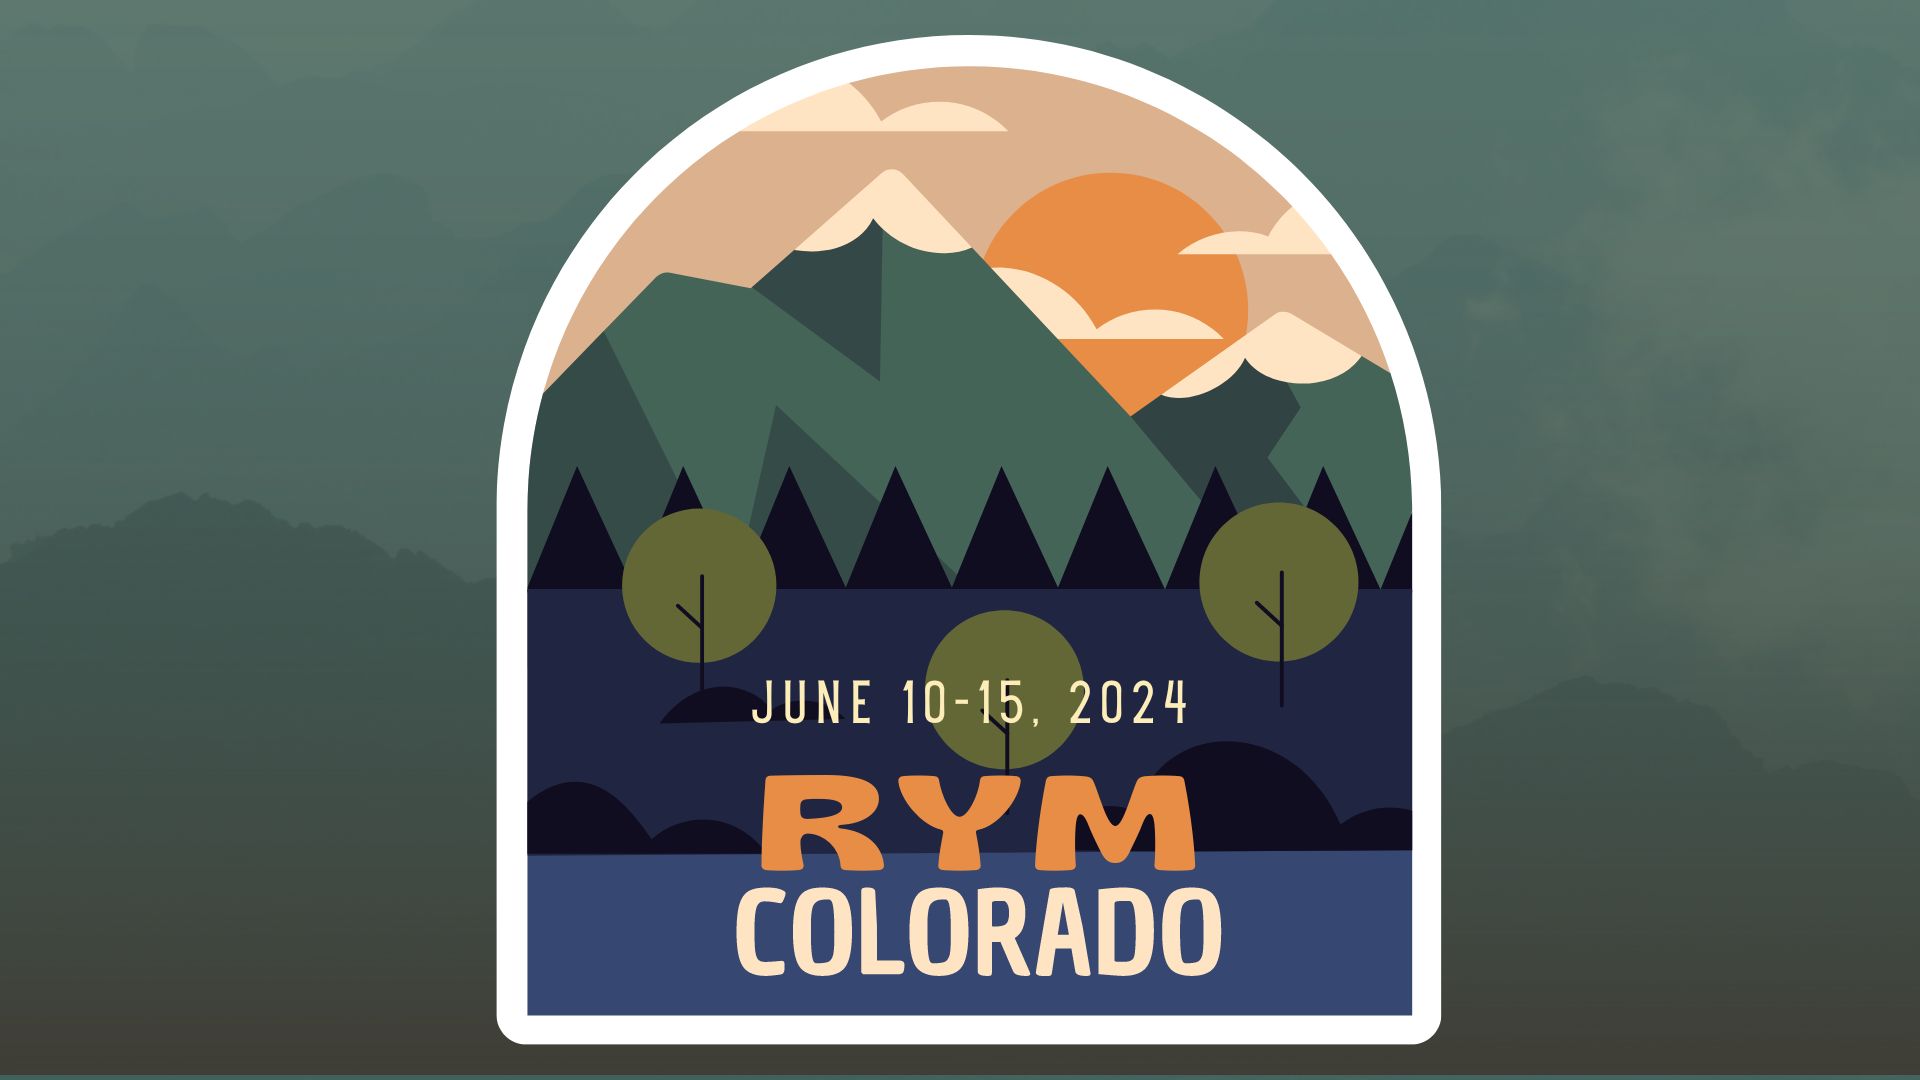 2024 RYM Colorado image